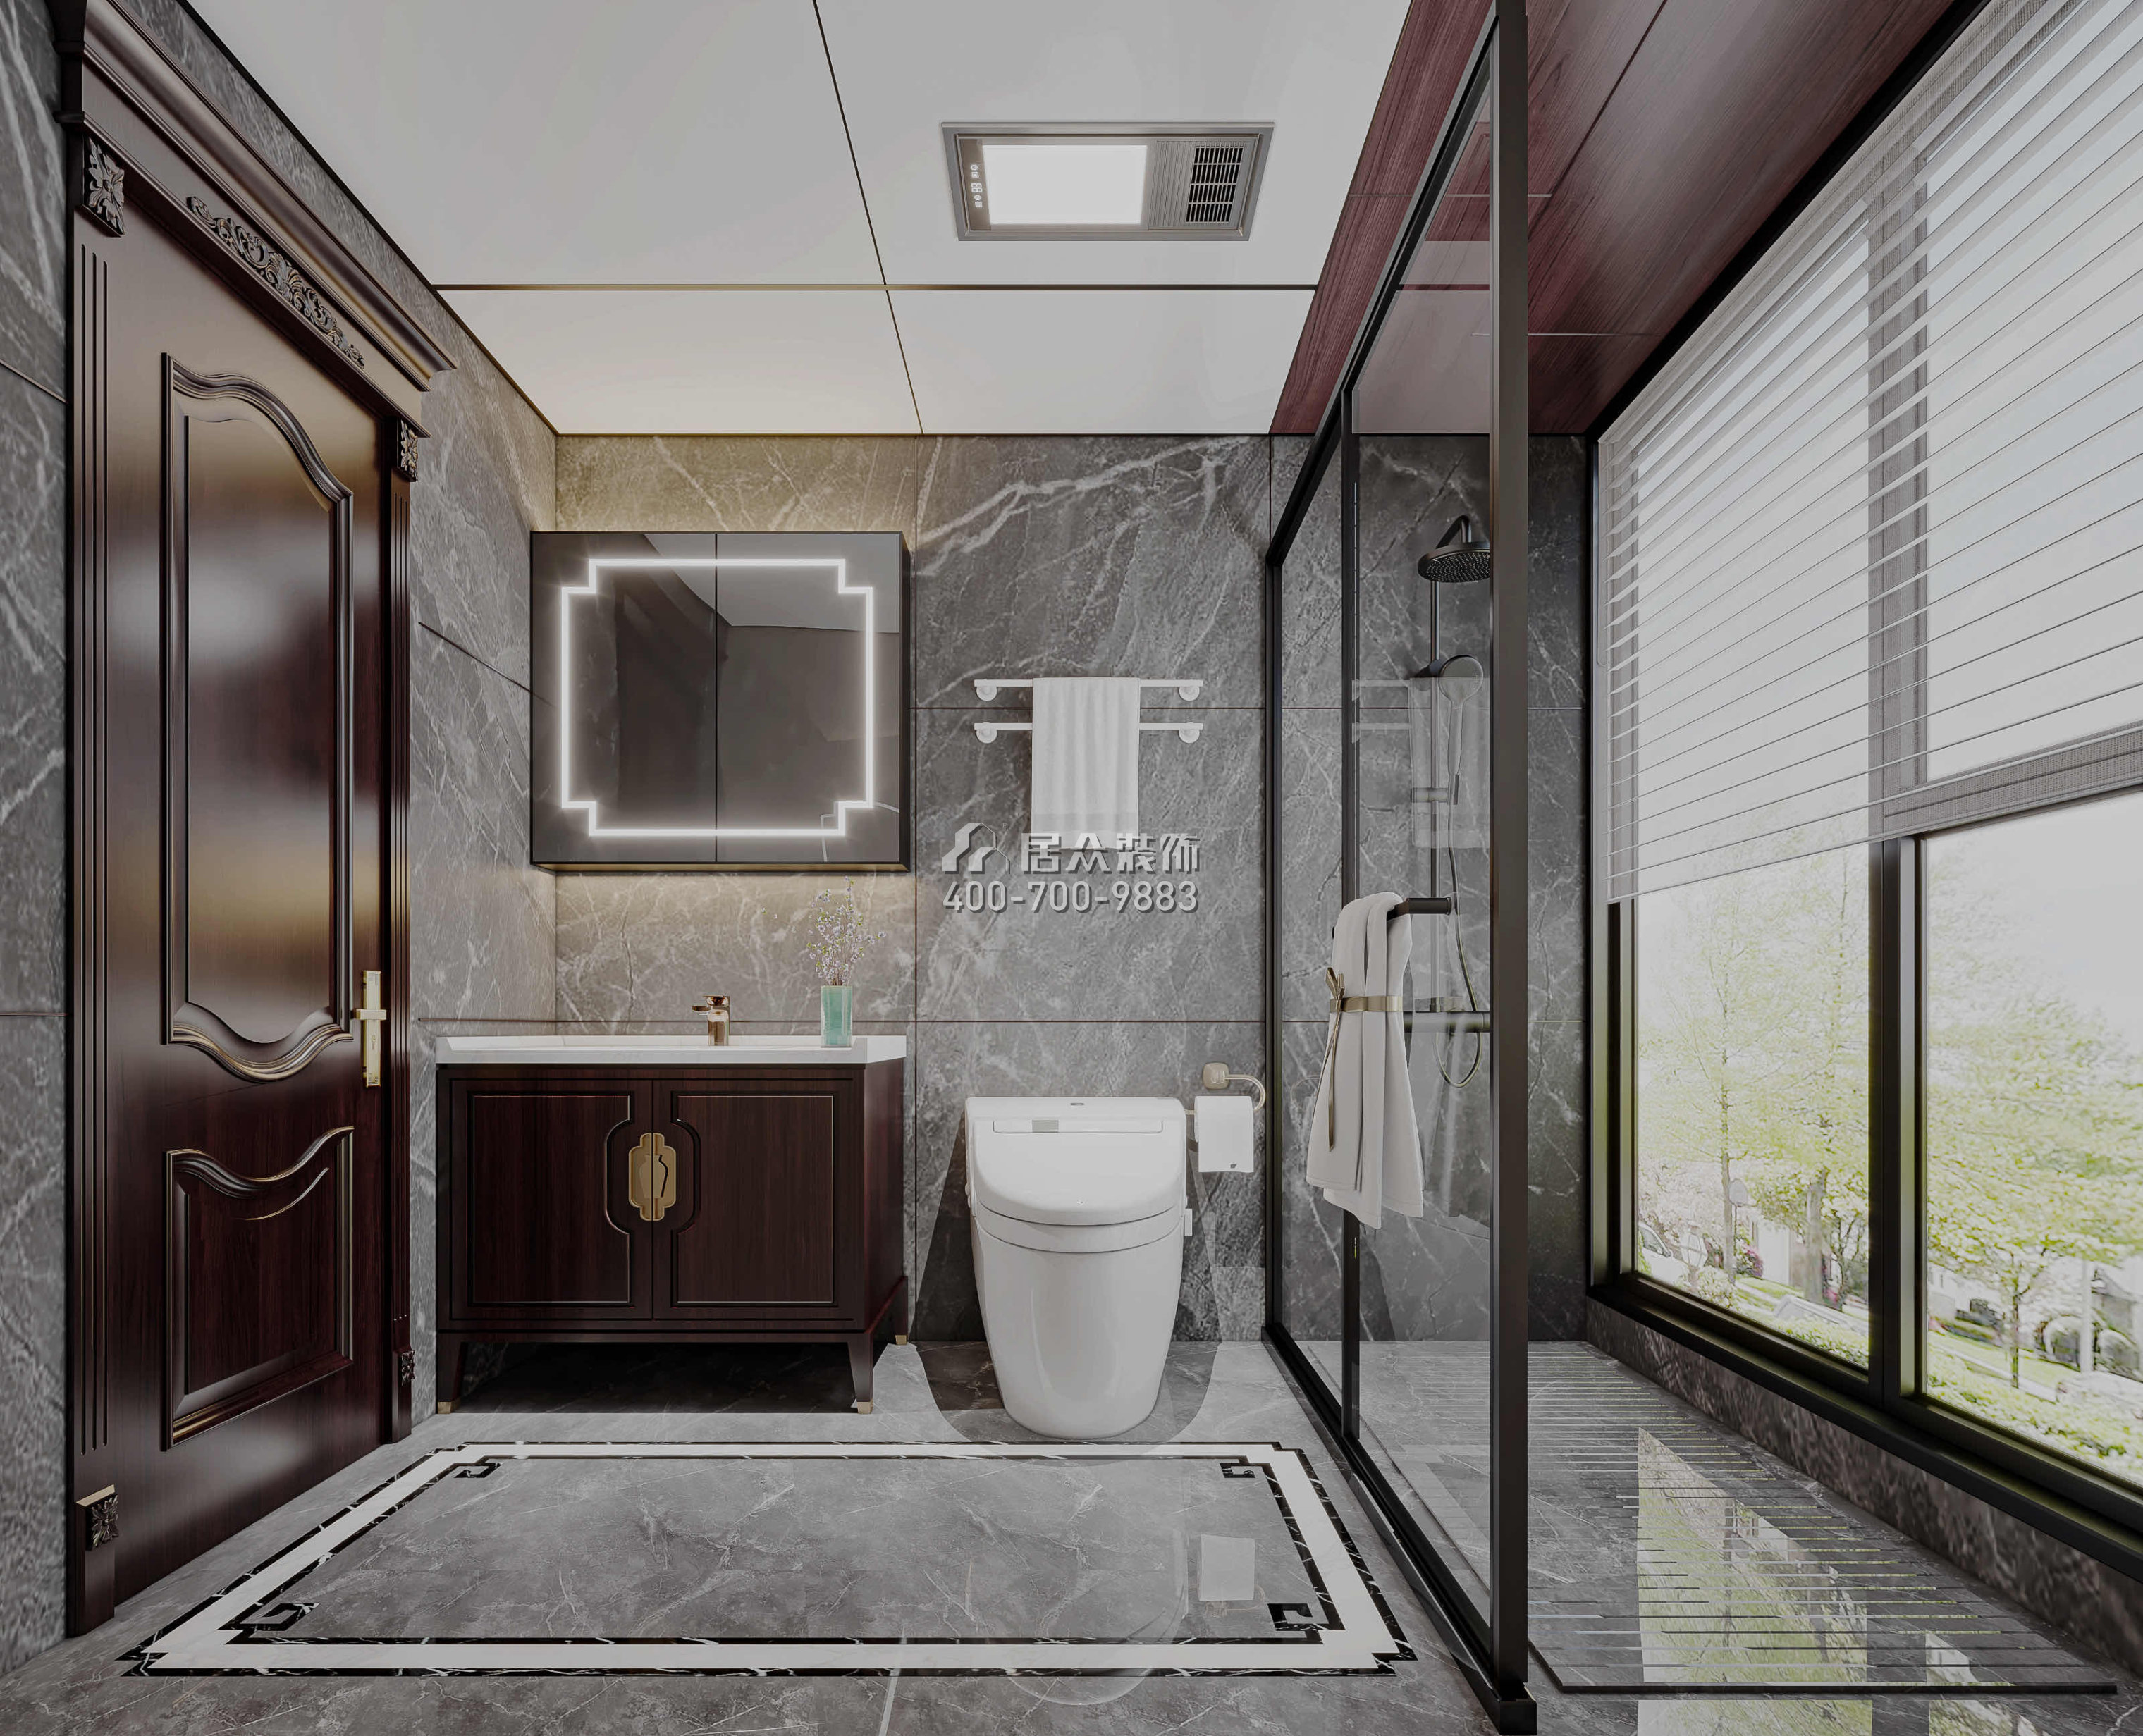 金地格林泊乐270平方米中式风格别墅户型卫生间装修效果图